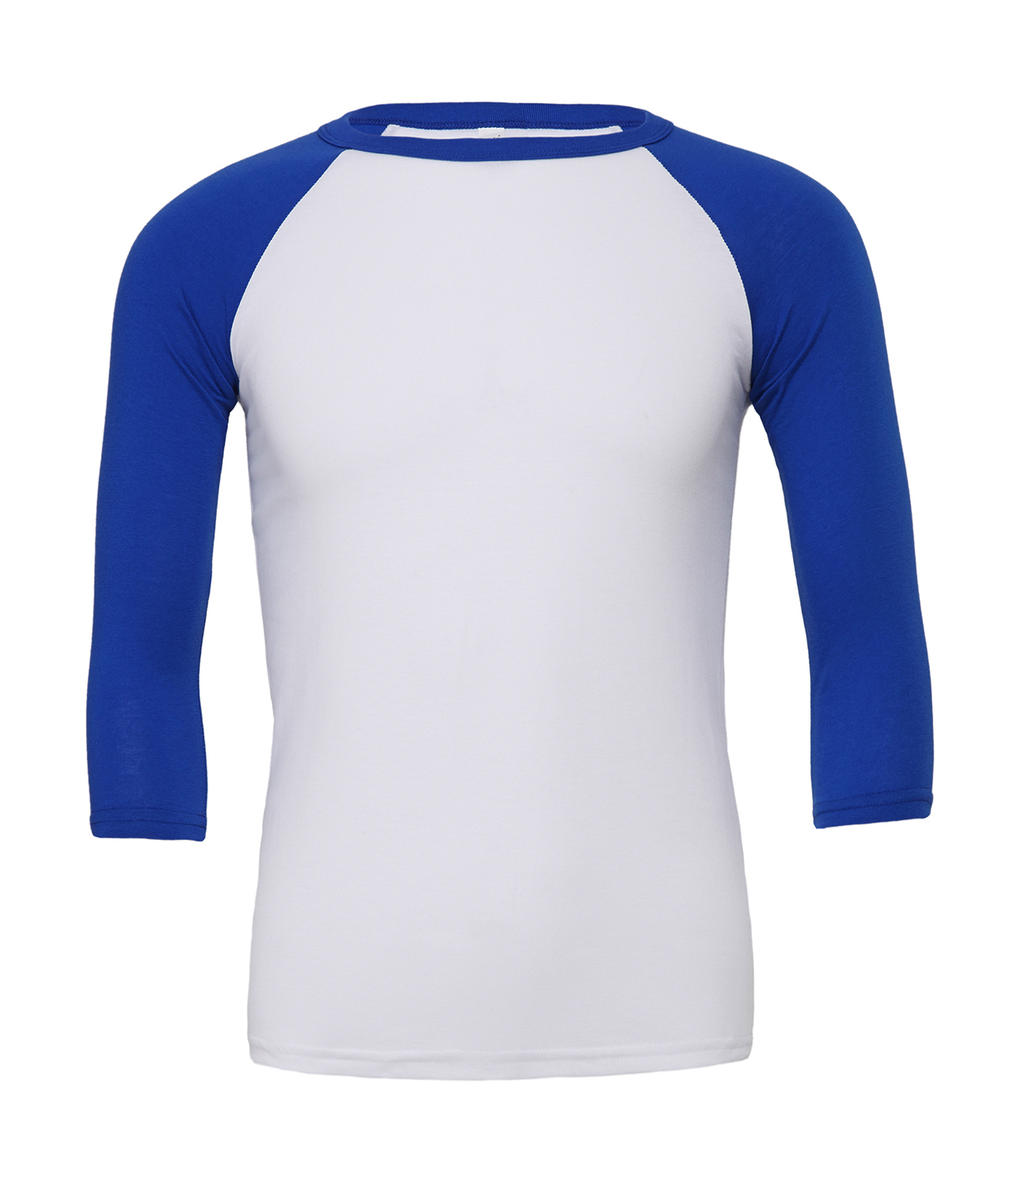  Unisex 3/4 Sleeve Baseball T-Shirt in Farbe White/True Royal